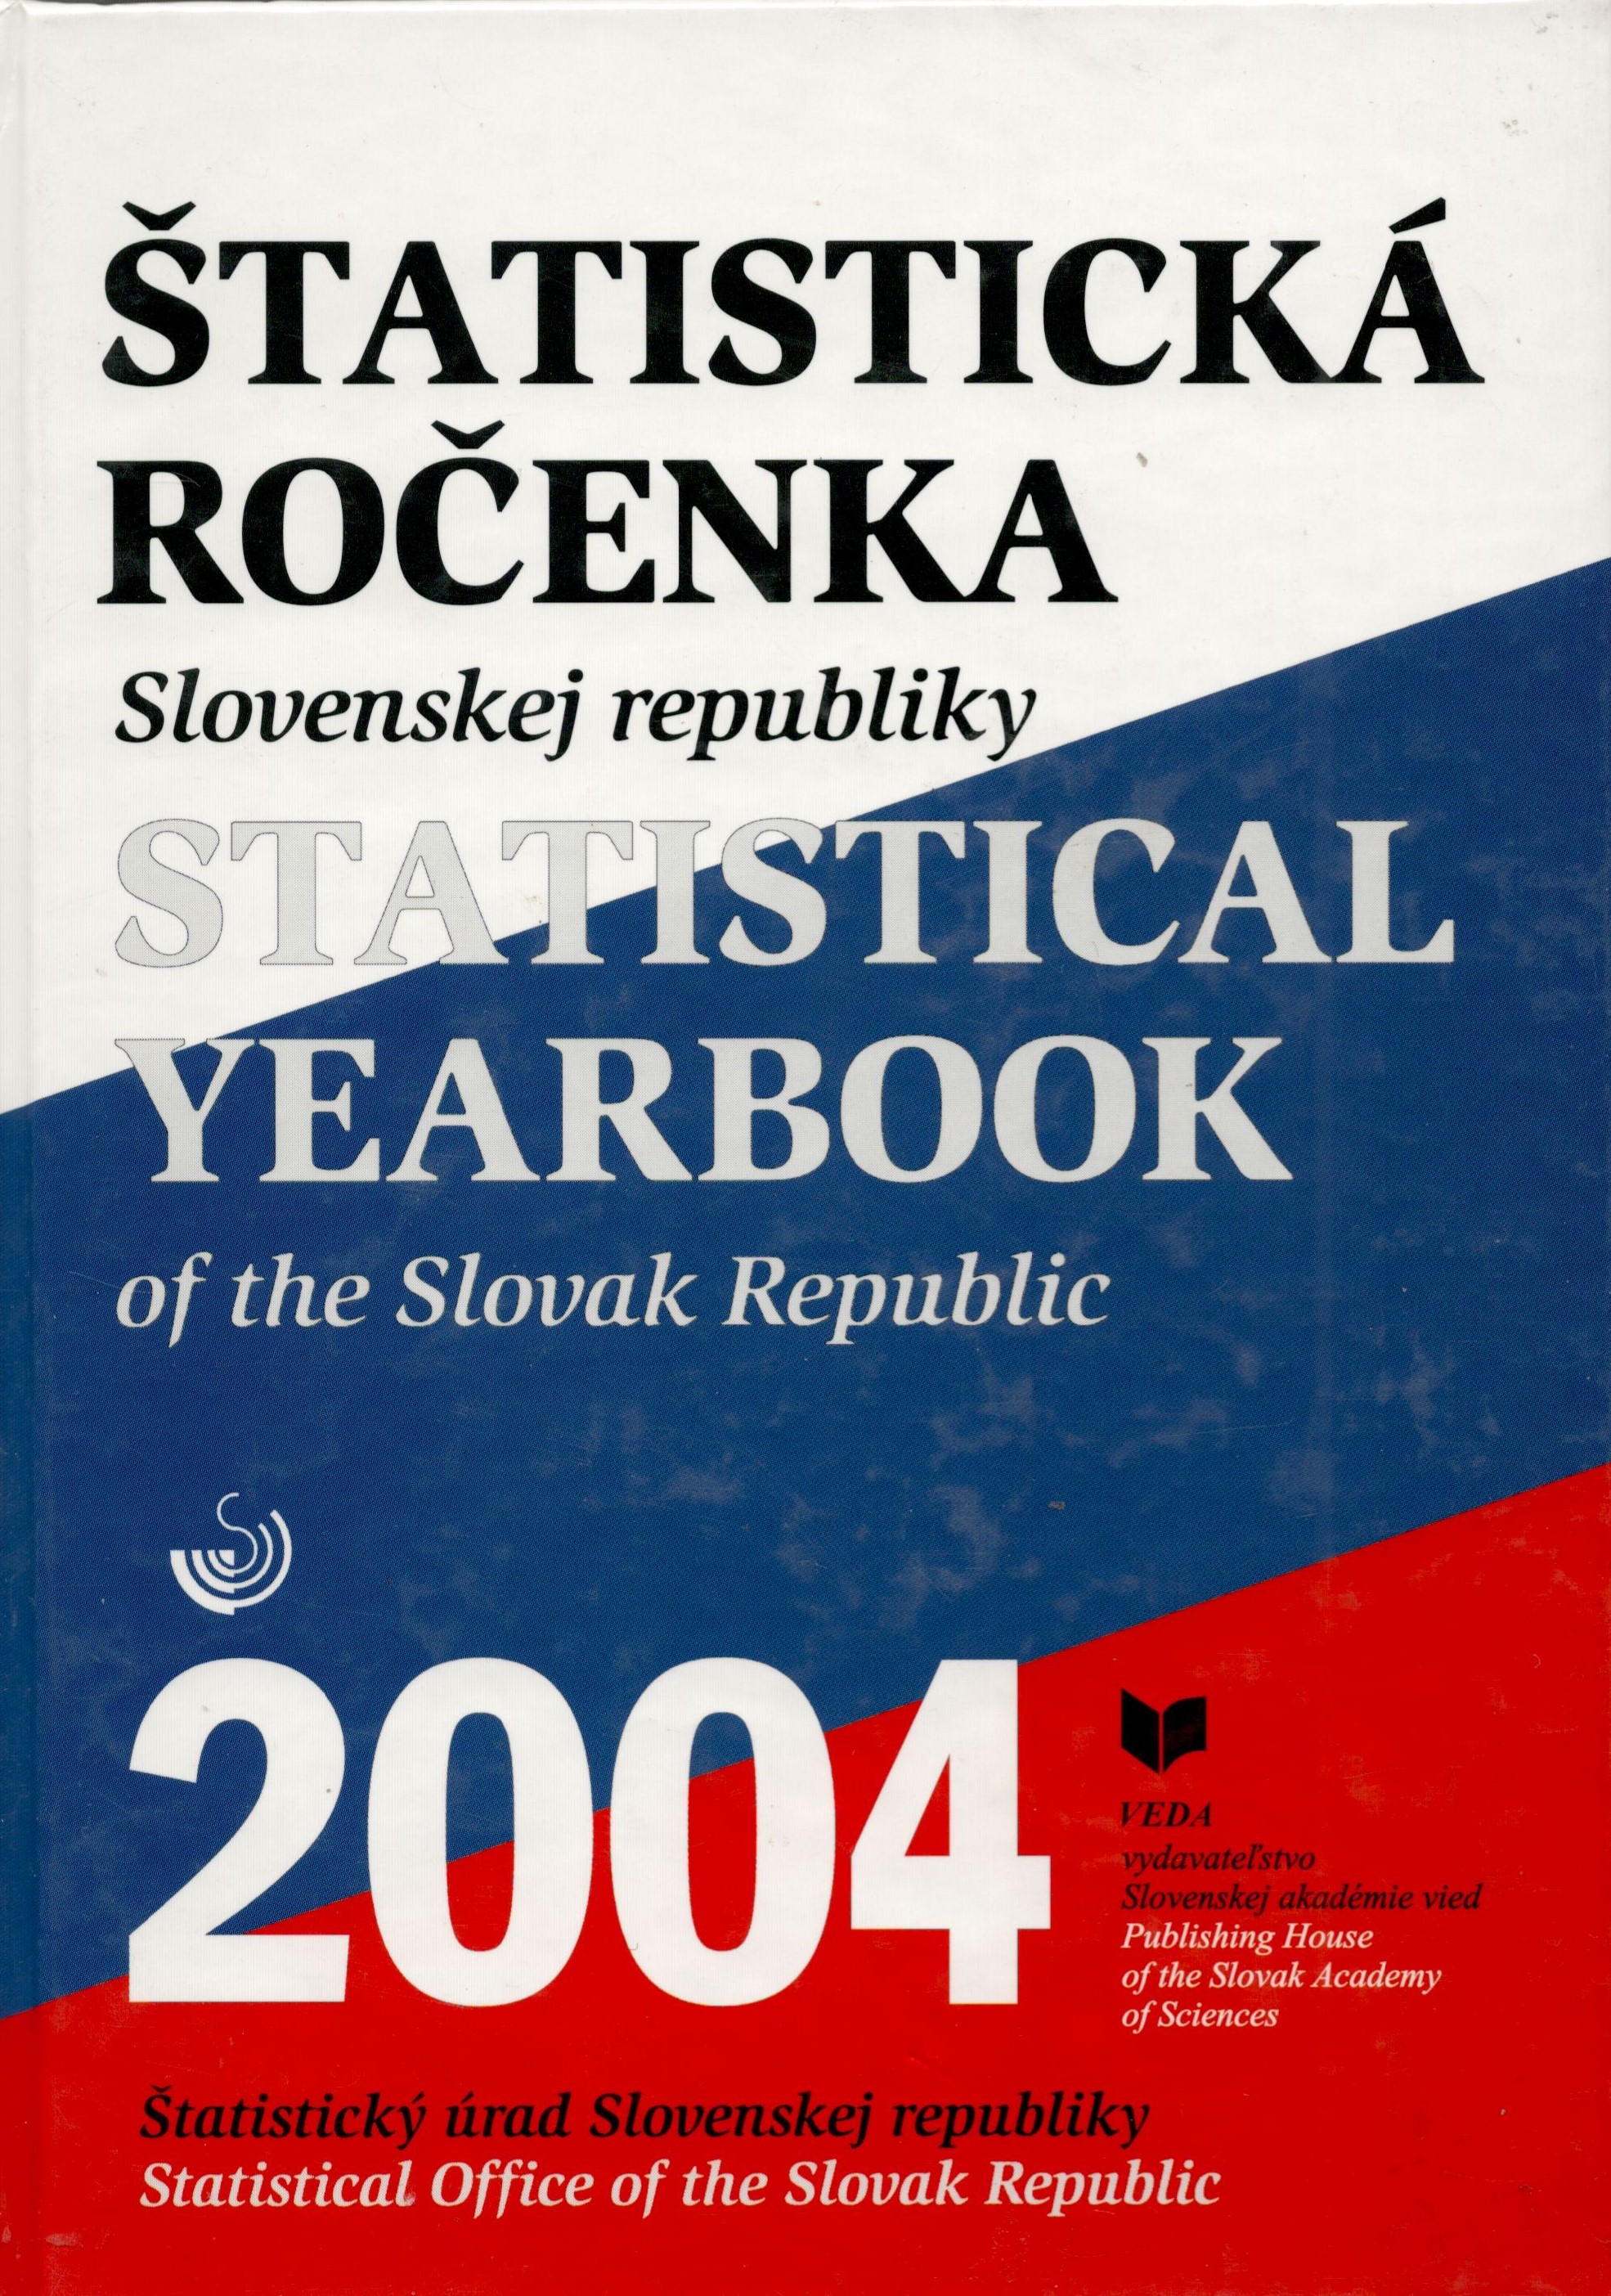 Štatistická ročenka Slovenskej republiky 2004